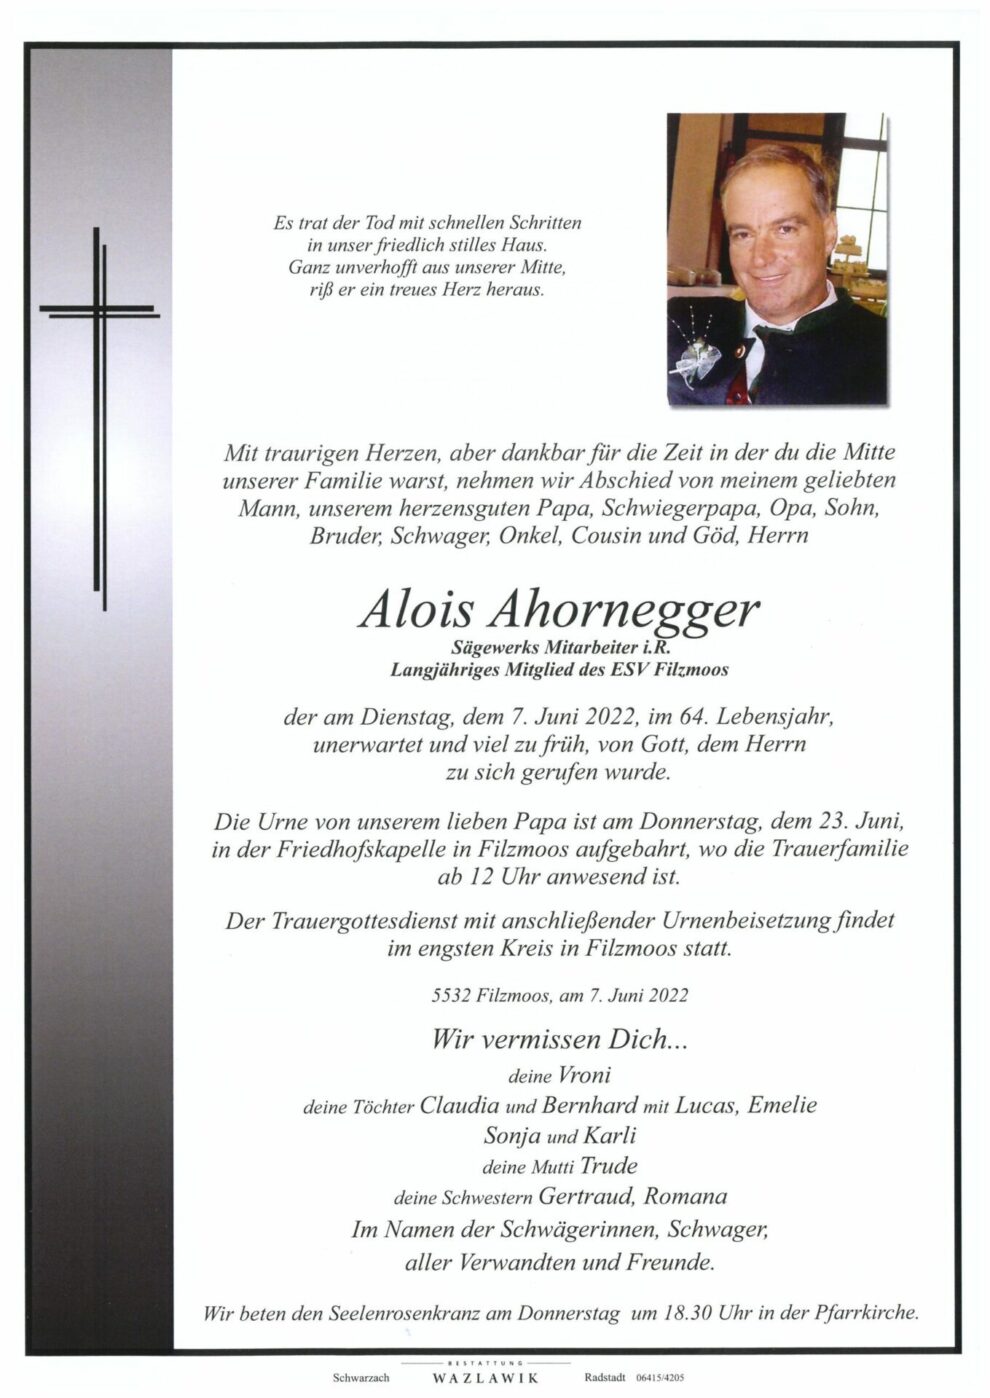 Alois Ahornegger